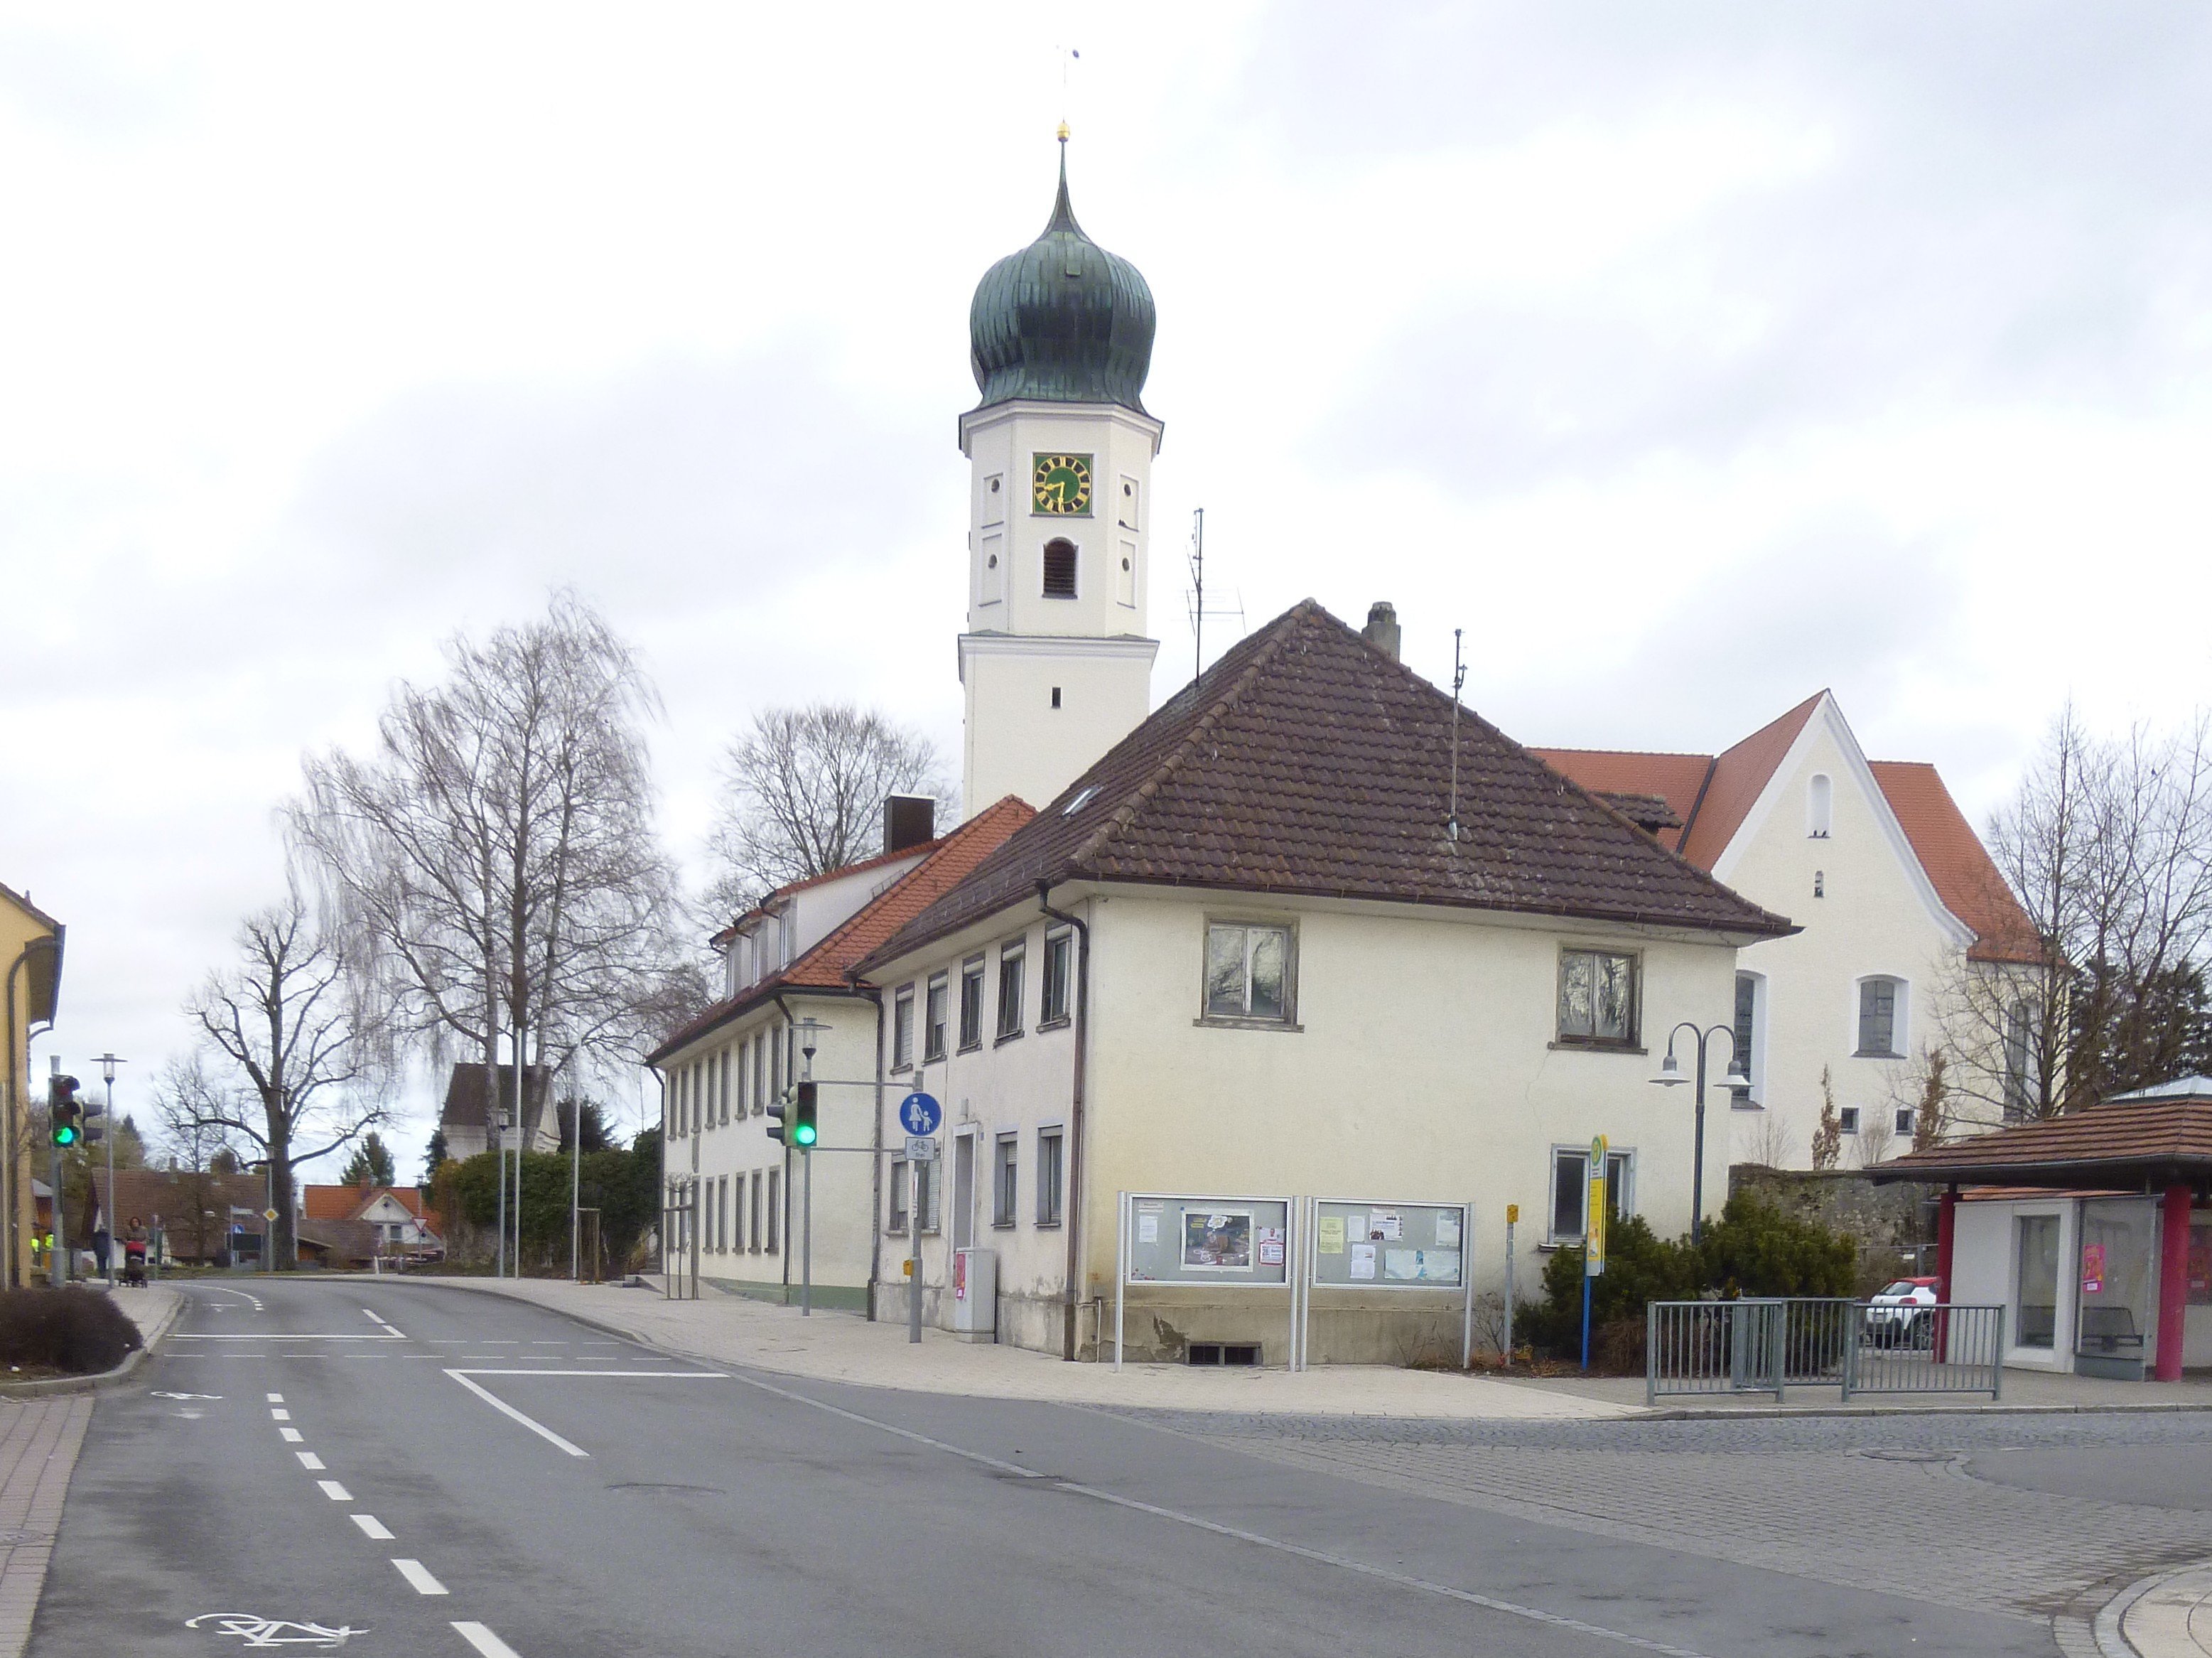  Ravensburger Straße 18 und 20 mit Kirche im Hintergrund 